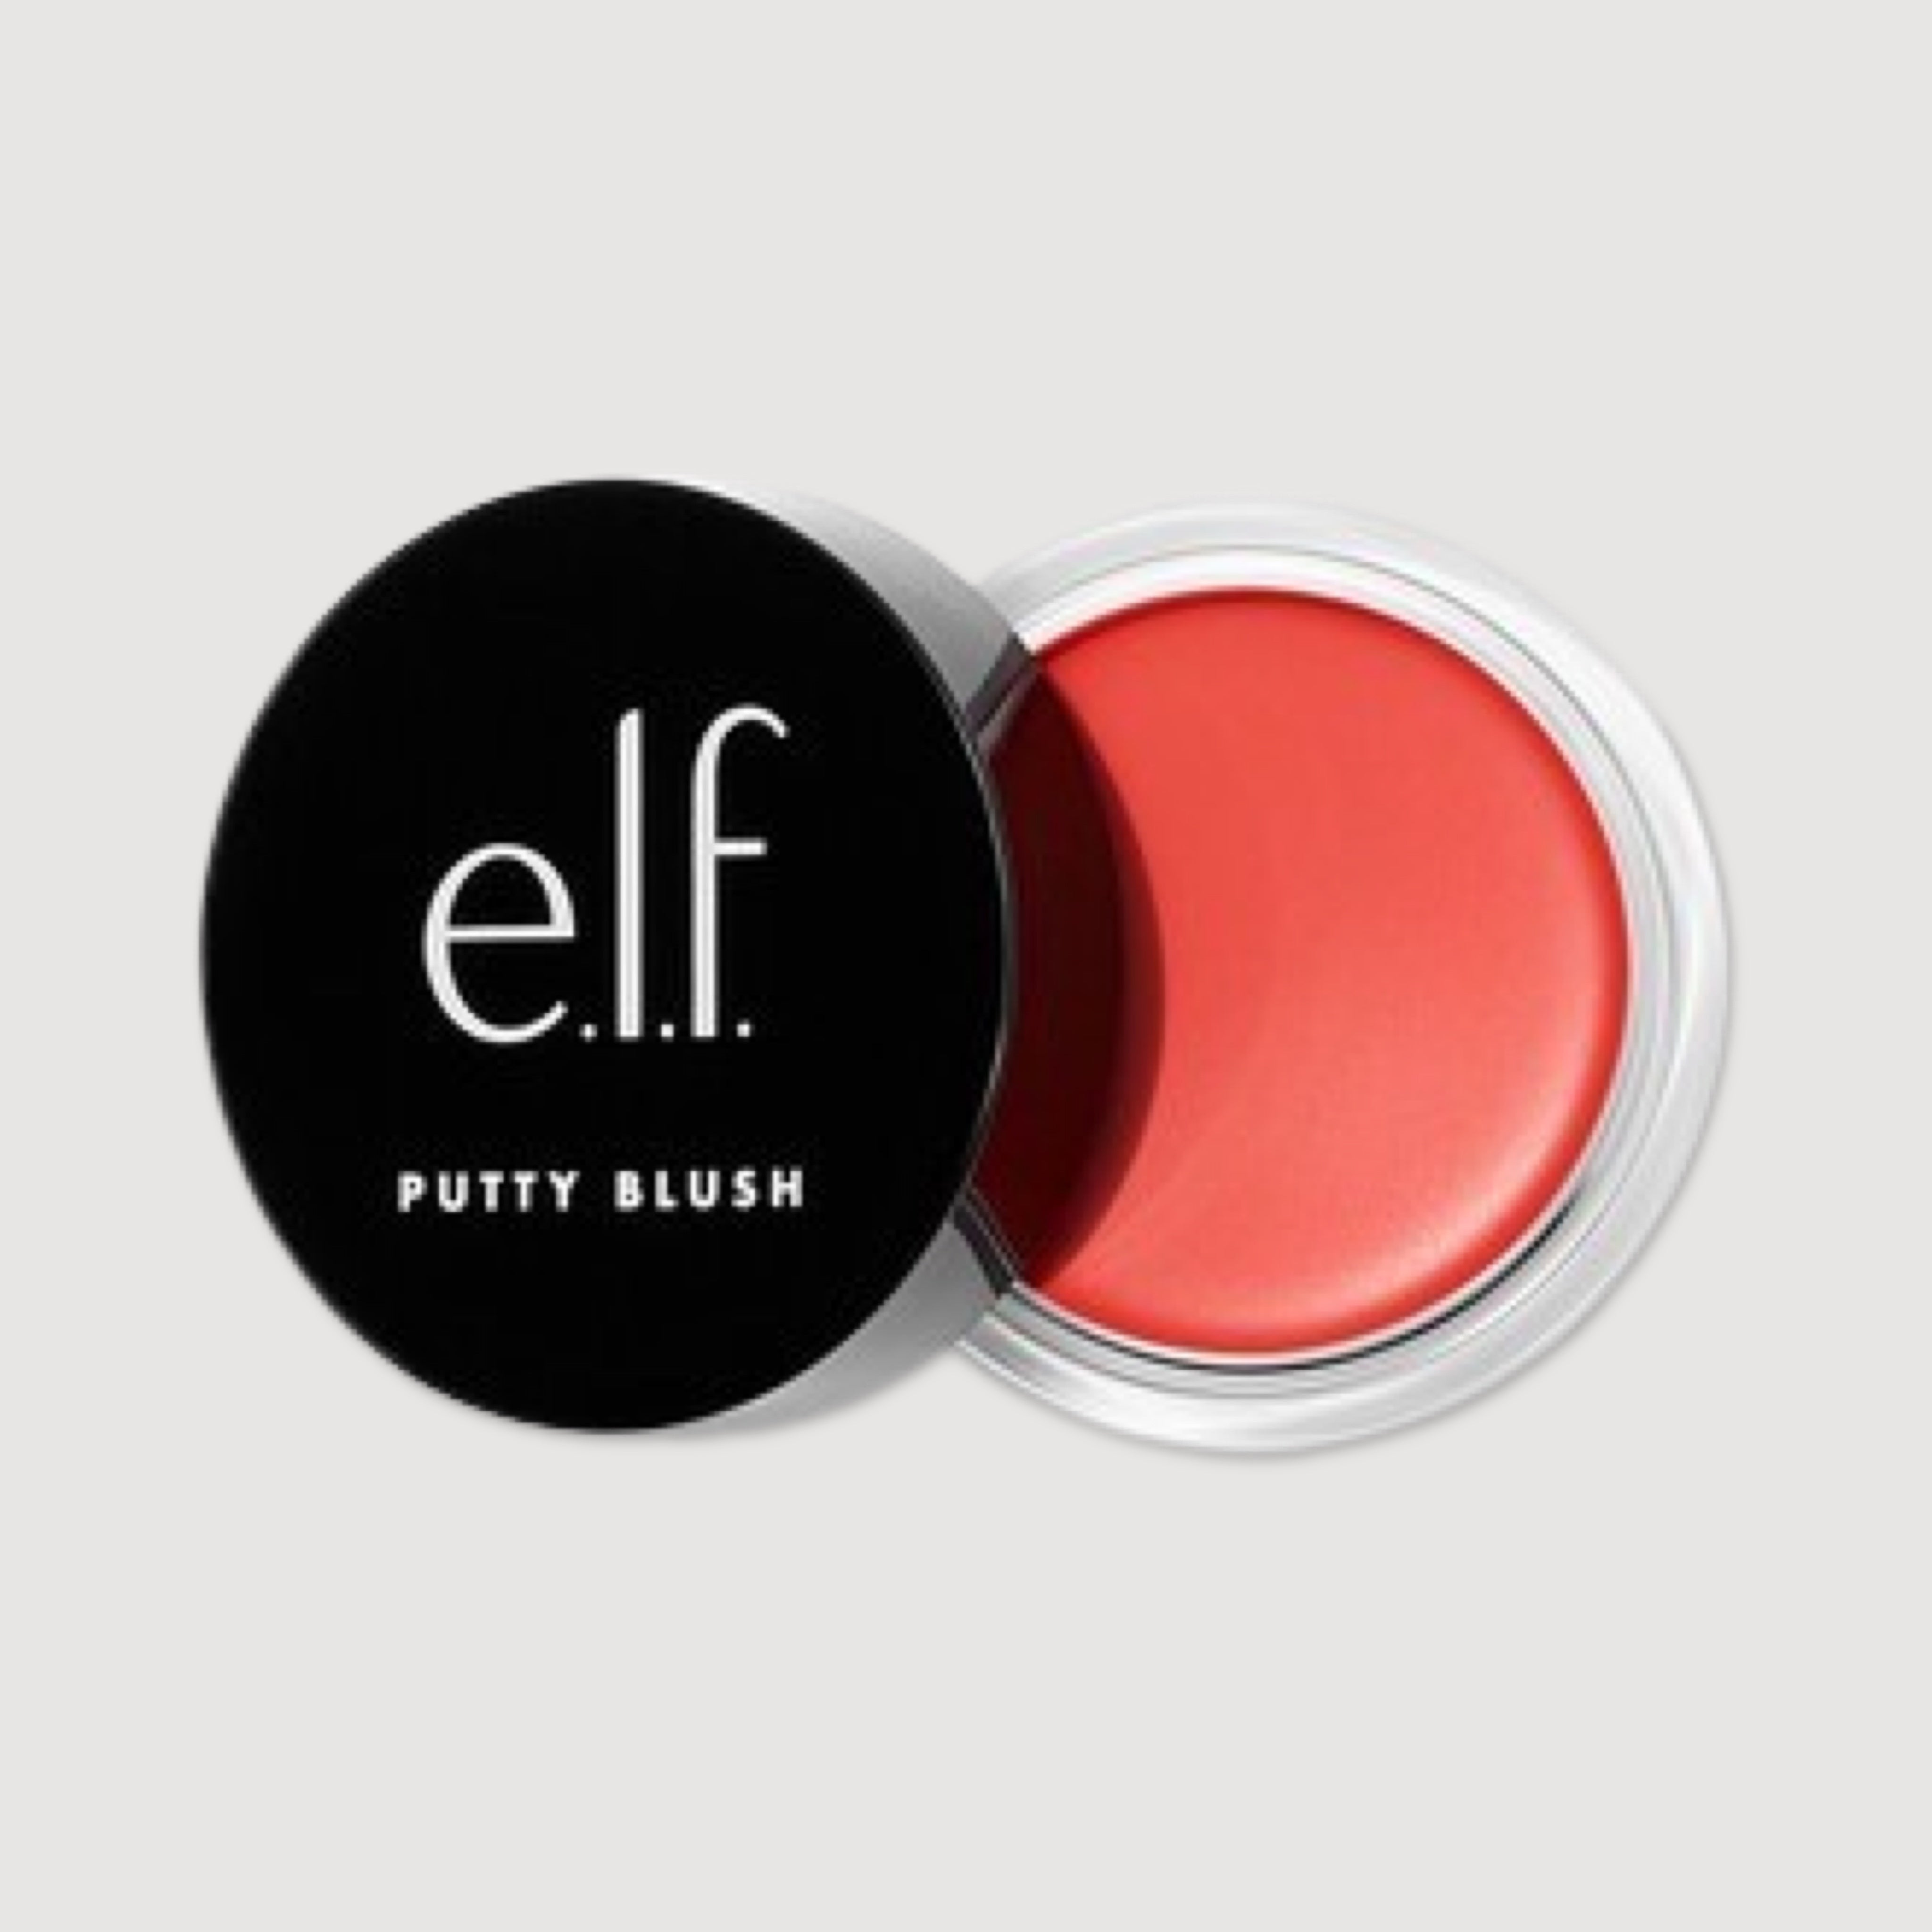 E.L.F Putty Blush